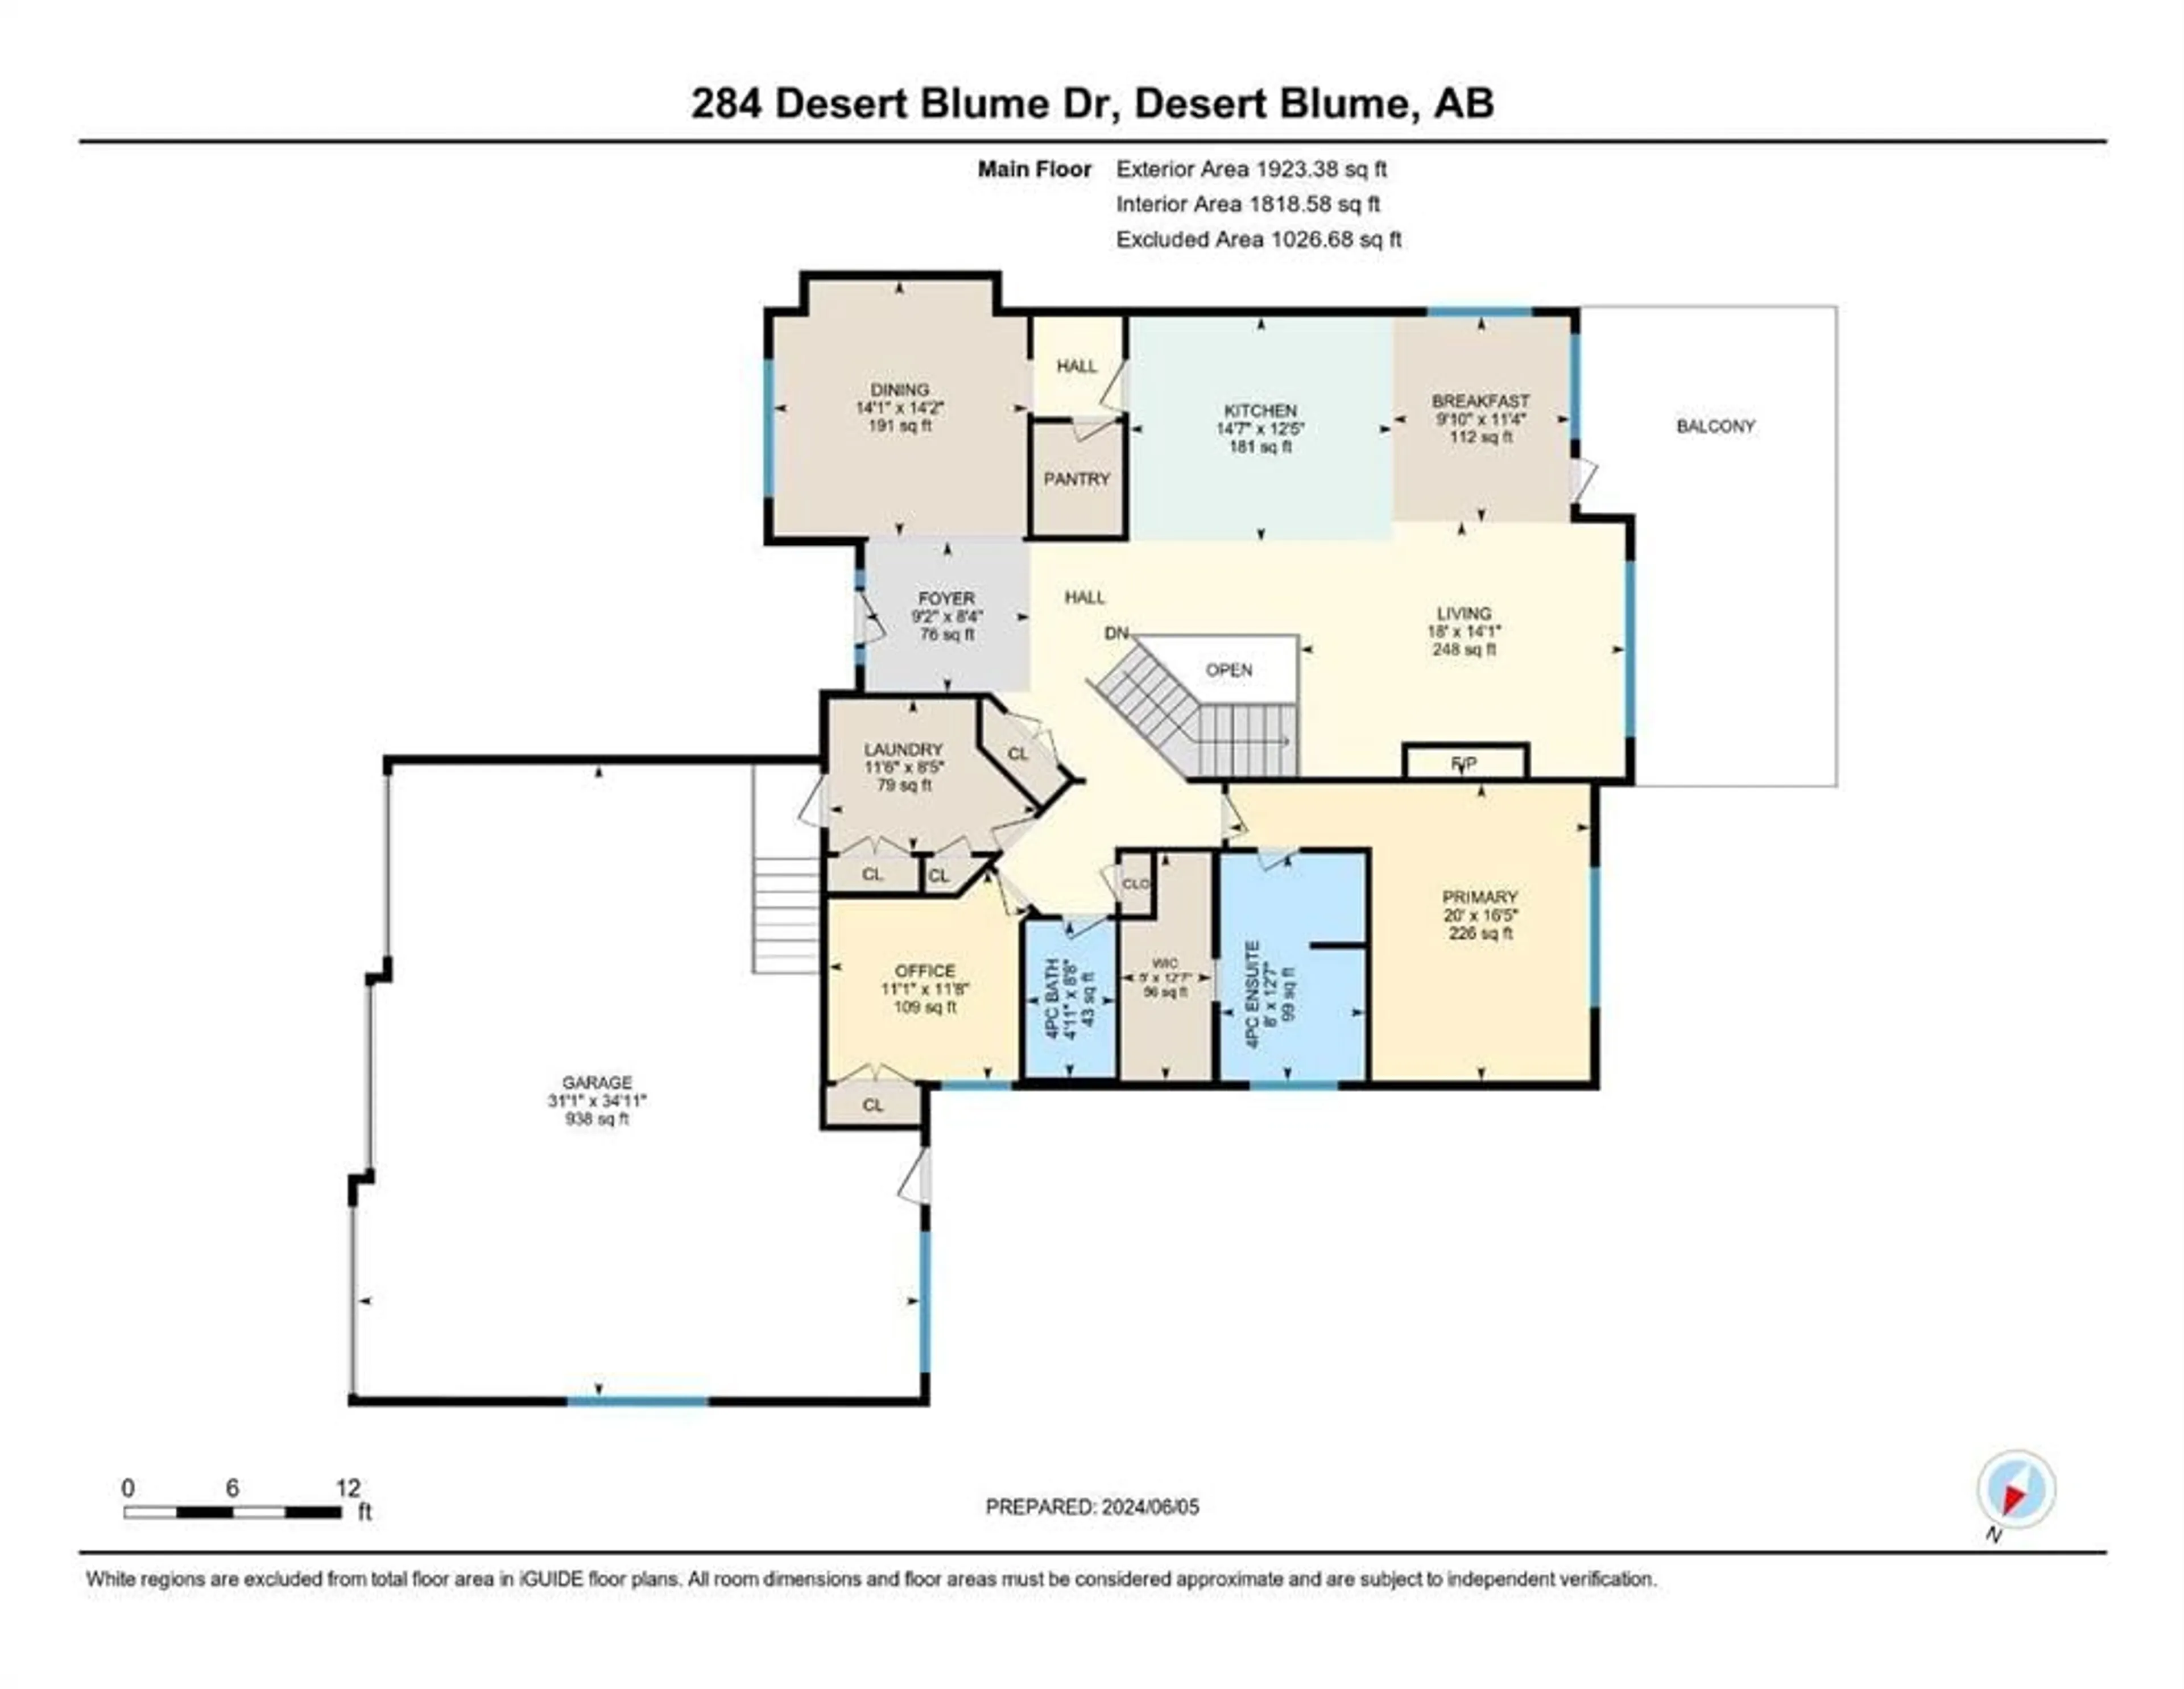 Floor plan for 284 Desert Blume Dr, Desert Blume Alberta T1B 0H6